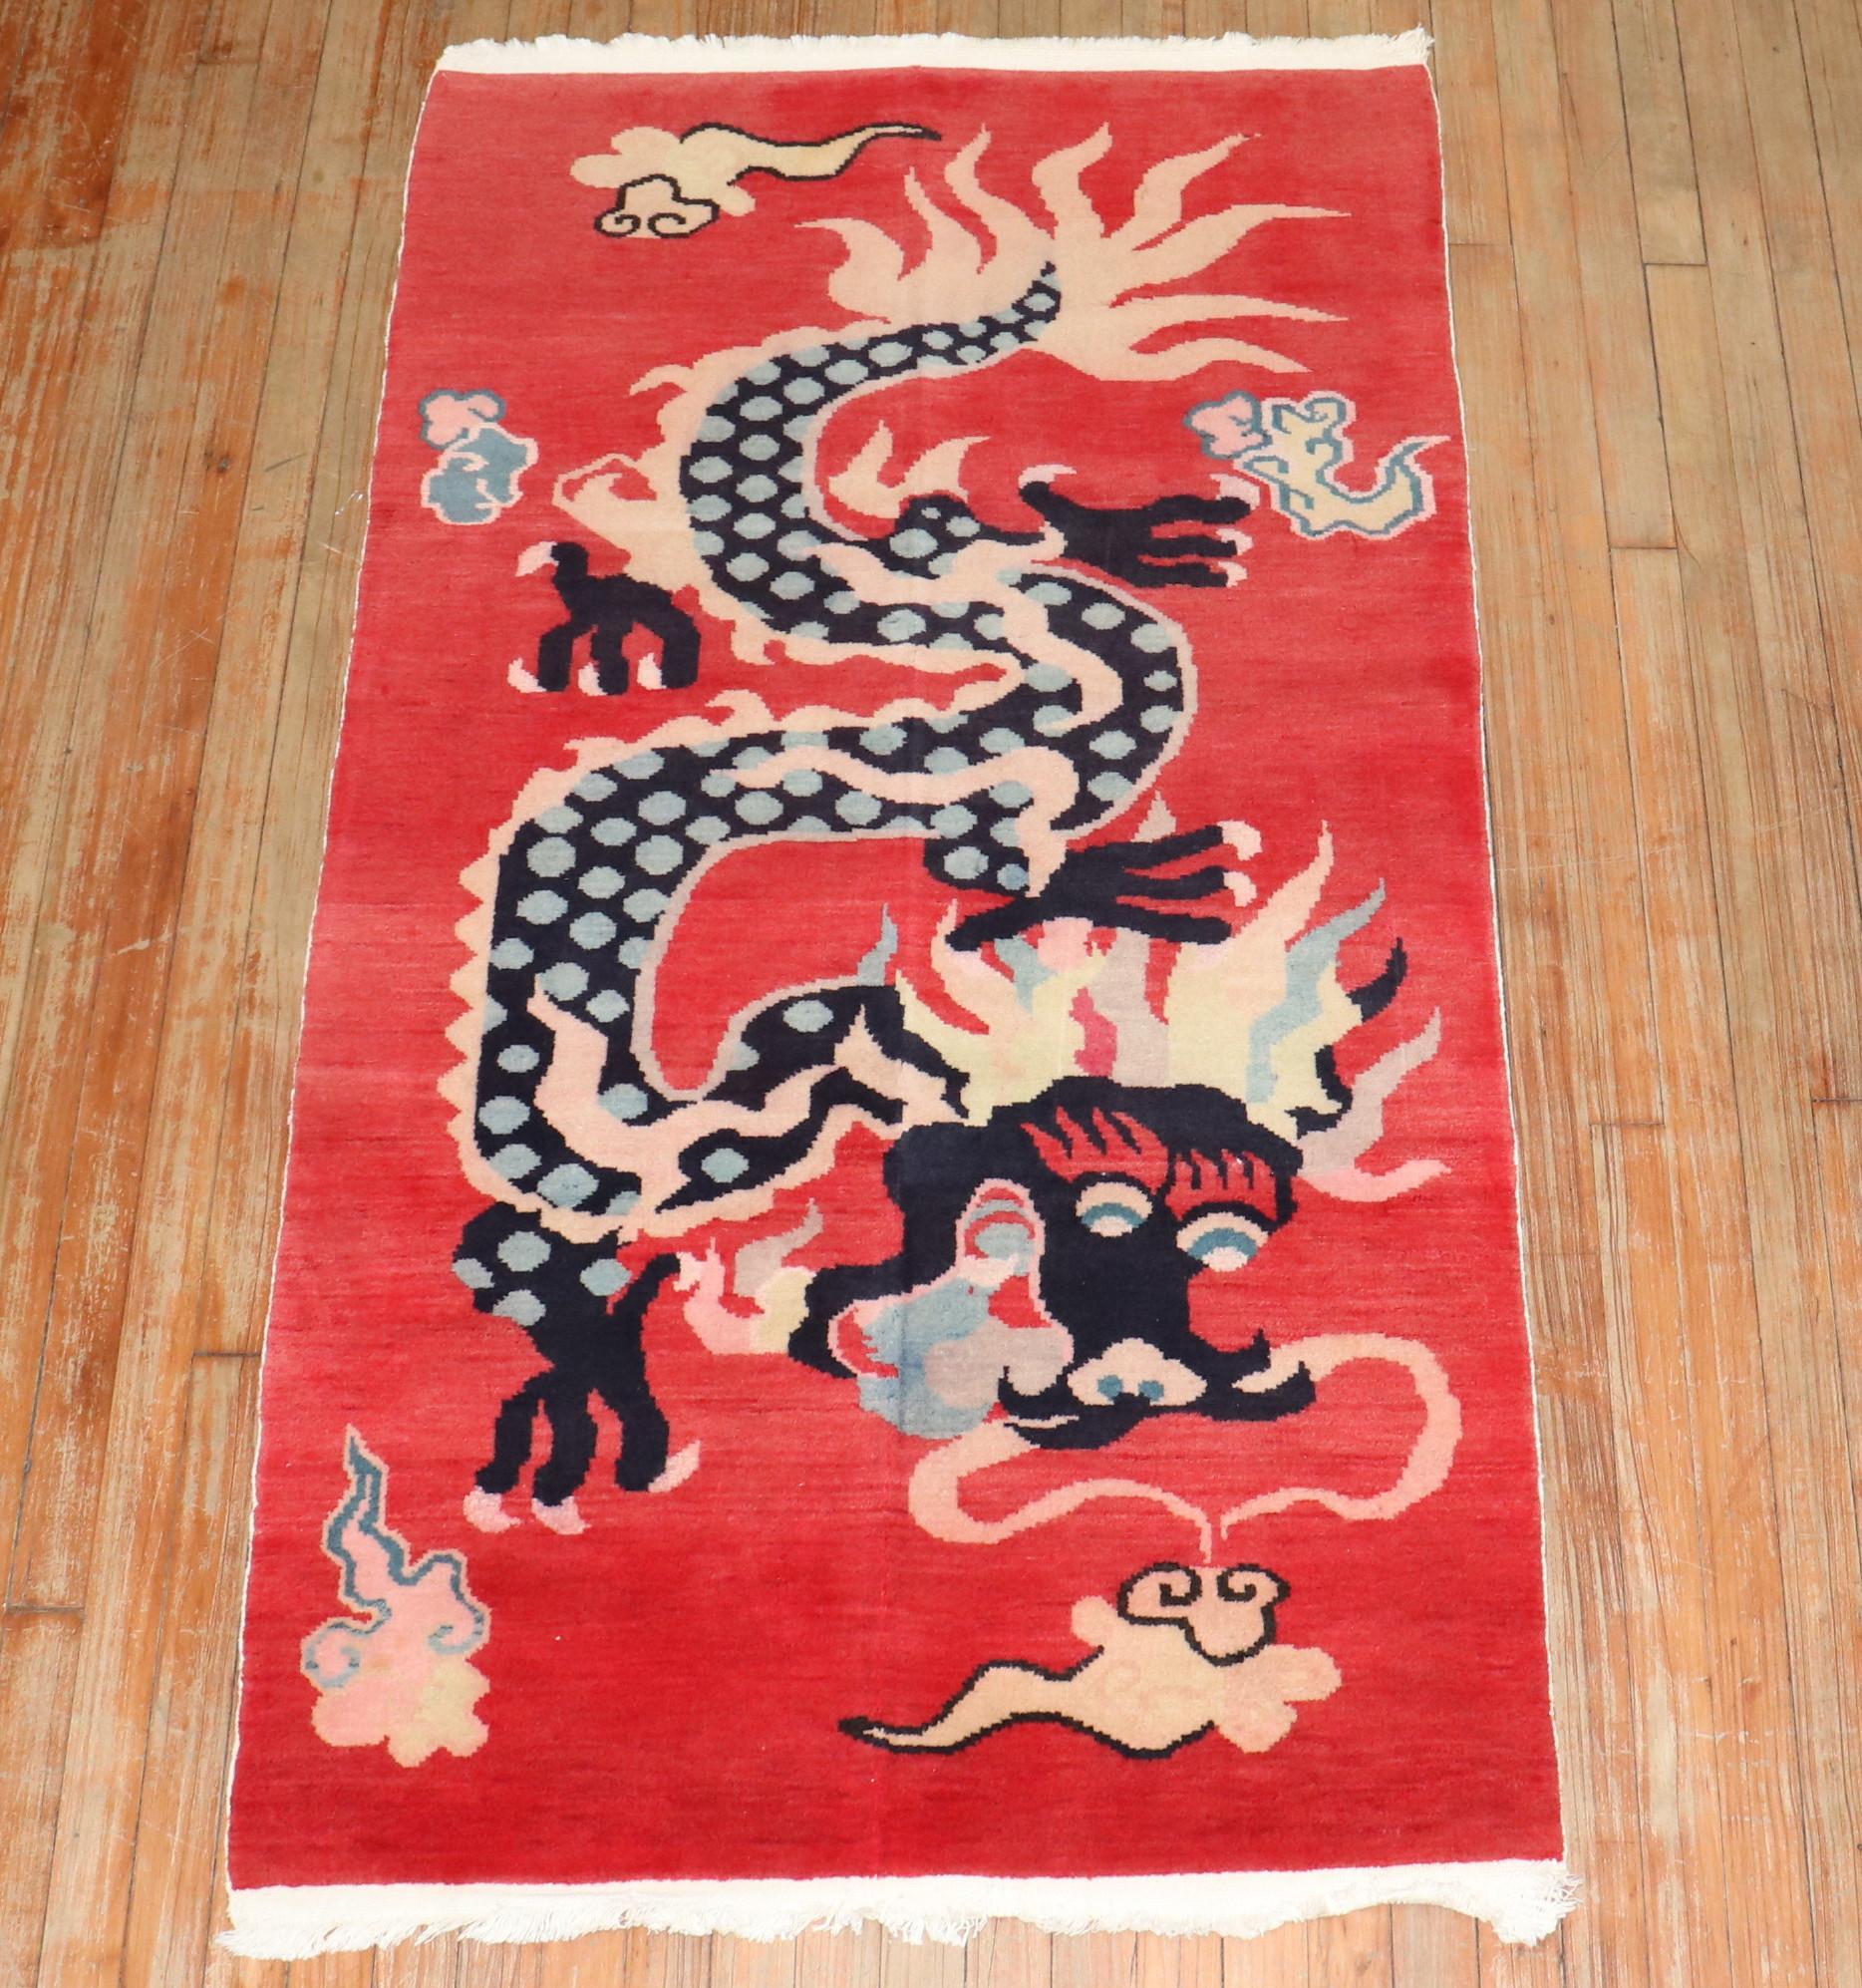 Tapis tibétain unique et coloré du 3e quart du 20e siècle avec un motif de dragon sur fond rouge.

Mesures : 3' x 5'7''.